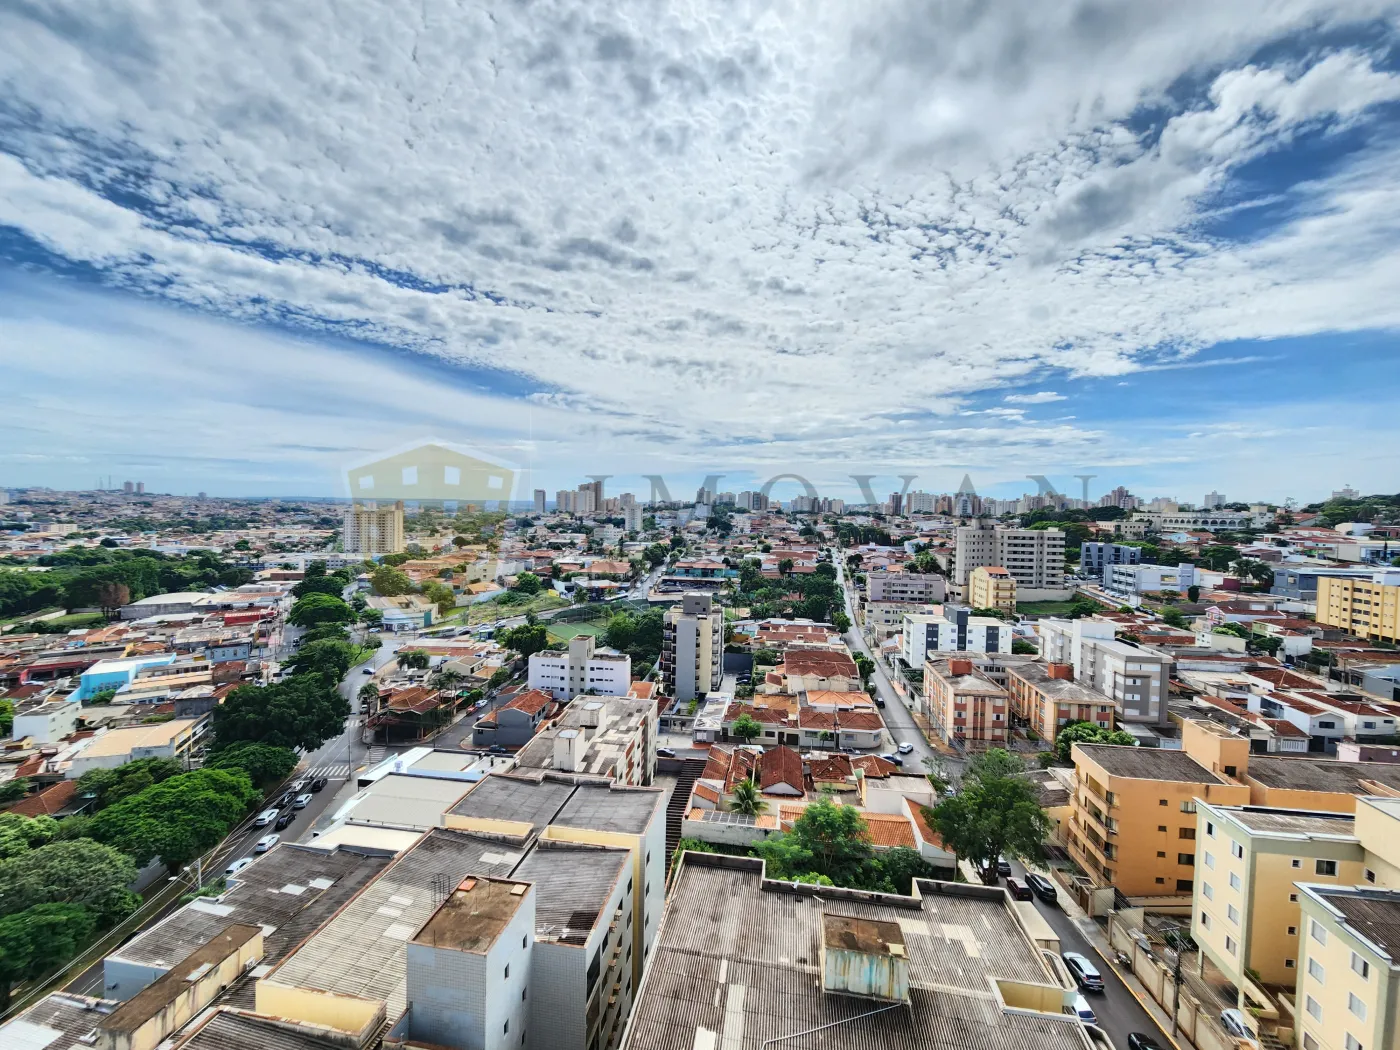 Comprar Apartamento / Padrão em Ribeirão Preto R$ 645.000,00 - Foto 20